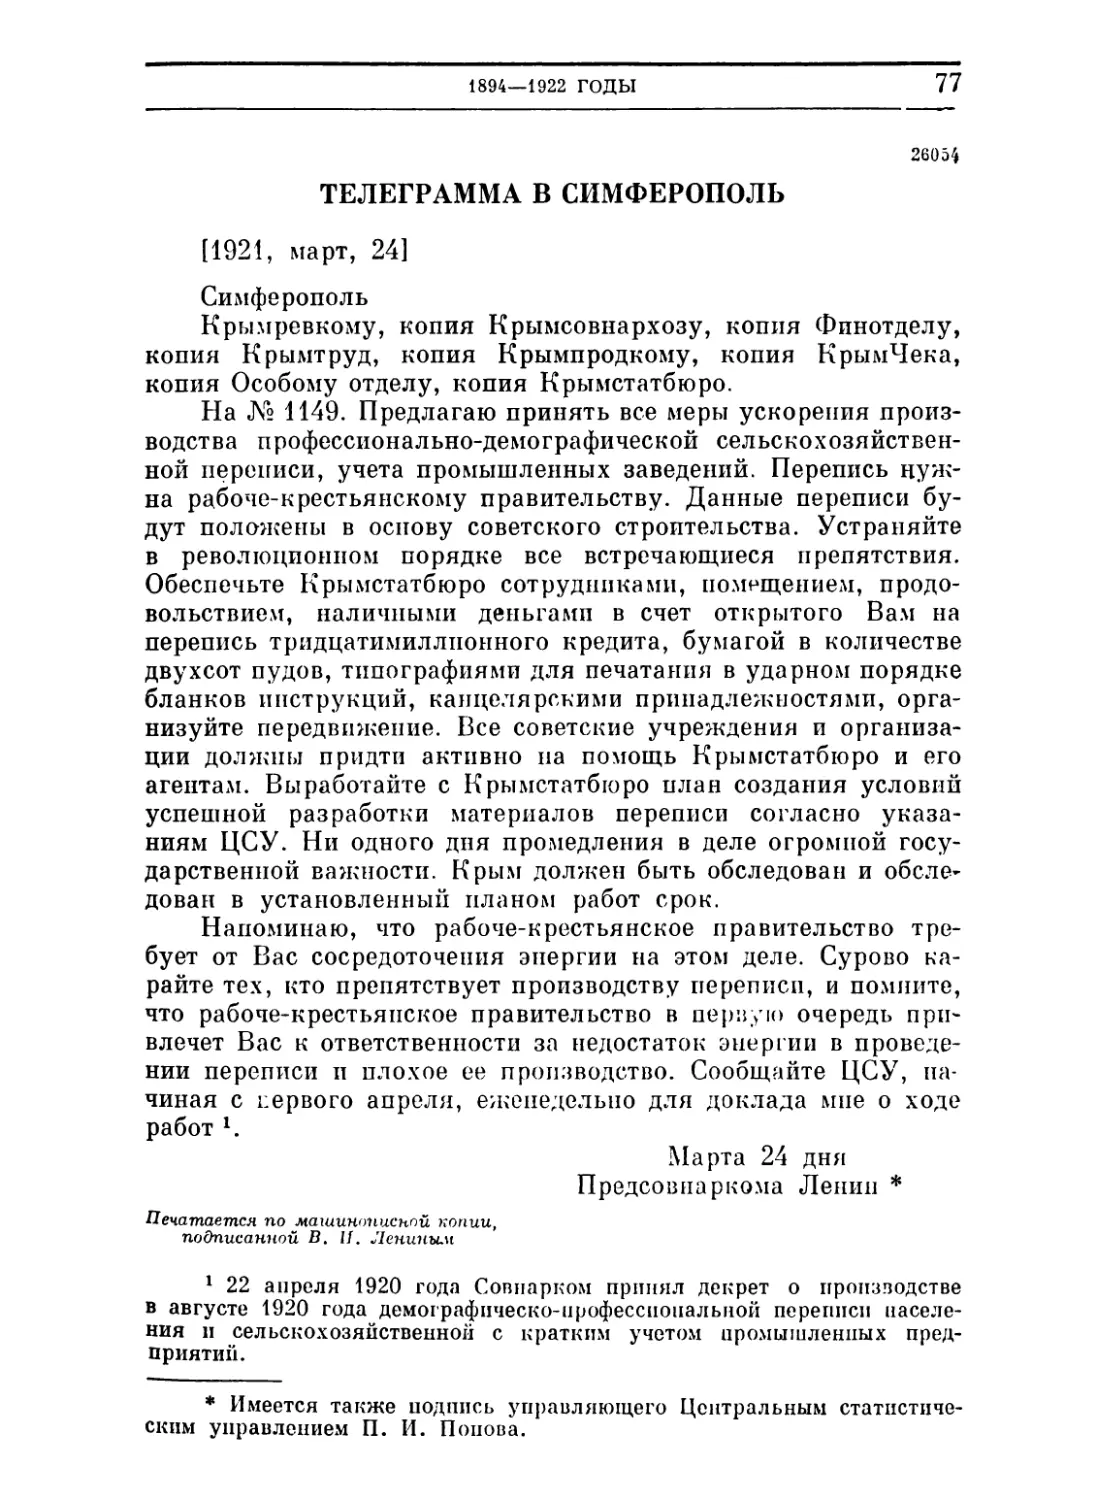 Телеграмма в Симферополь. 24 марта 1921